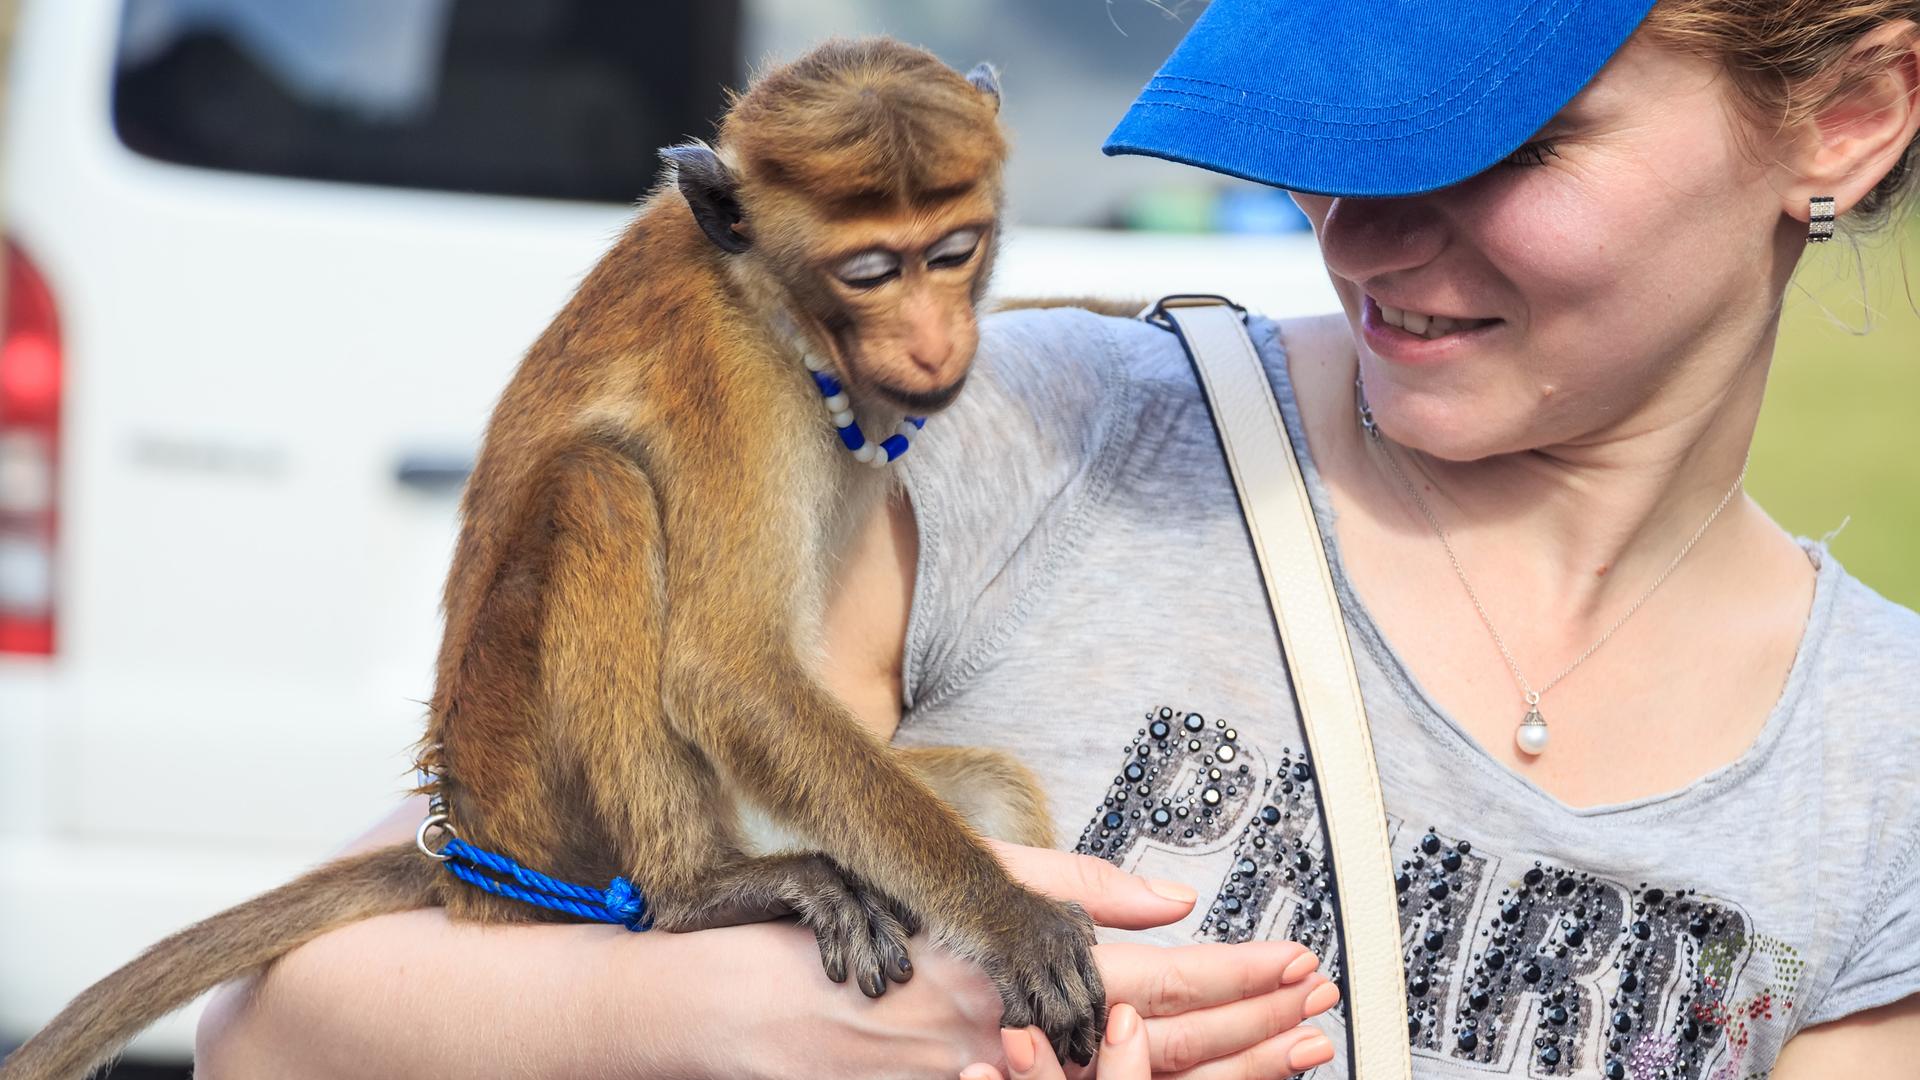 Ein Affe, der angeleint auf dem Arm einer Touristin sitzt.